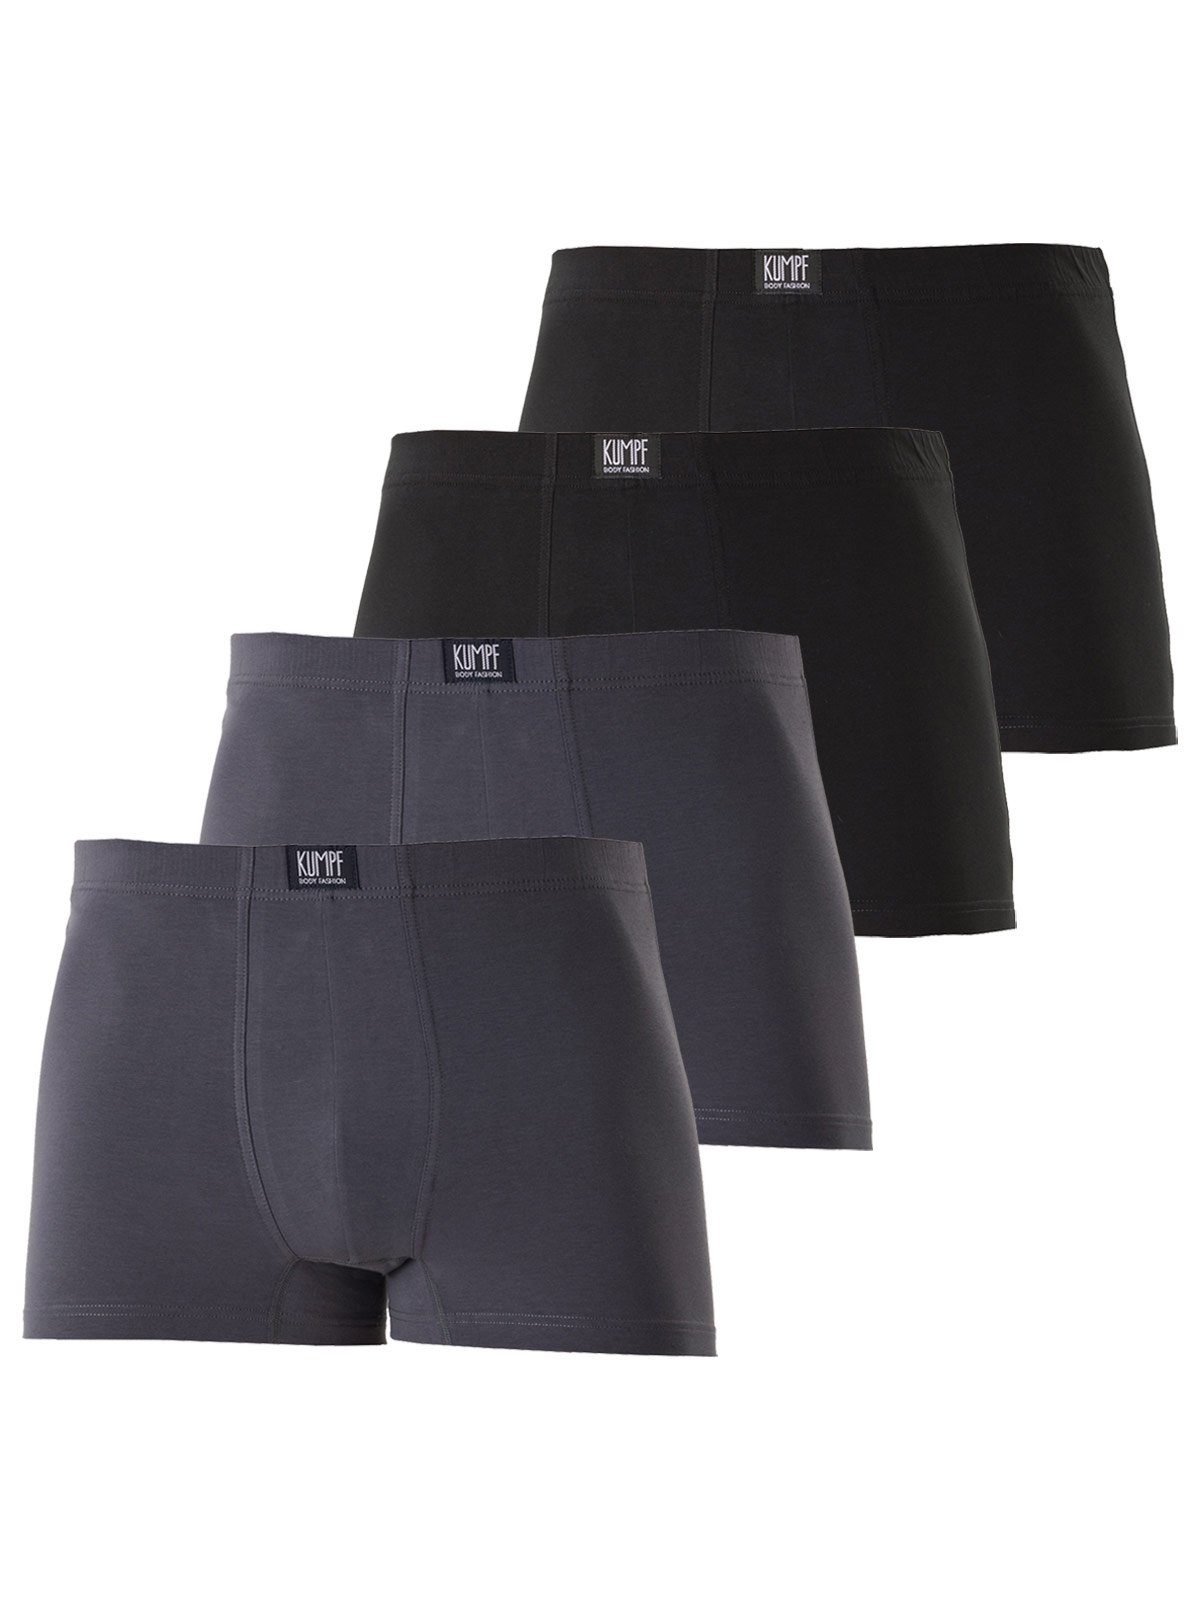 KUMPF Retro Pants 4er Sparpack Herren Pants Bio Cotton (Spar-Set, 4-St) hohe Markenqualität mittelgrau schwarz